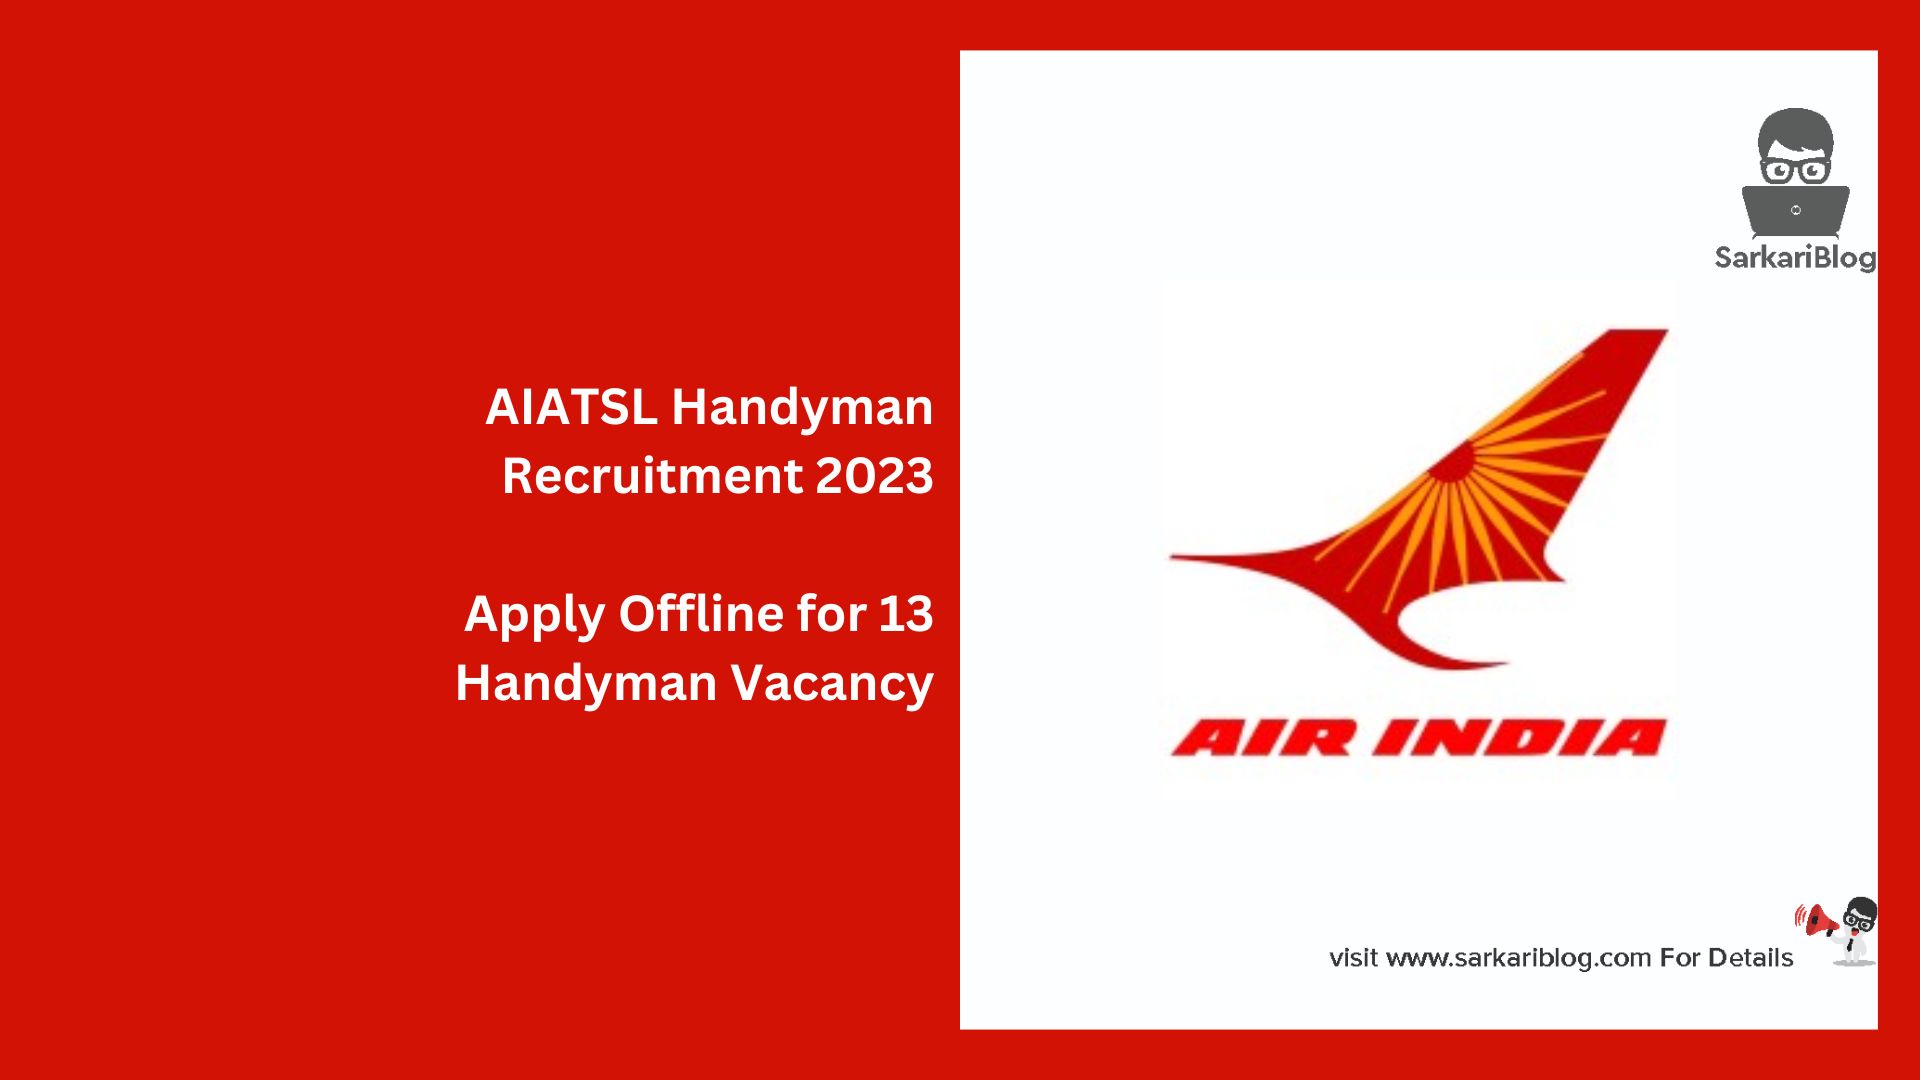 AIATSL Handyman Recruitment 2023